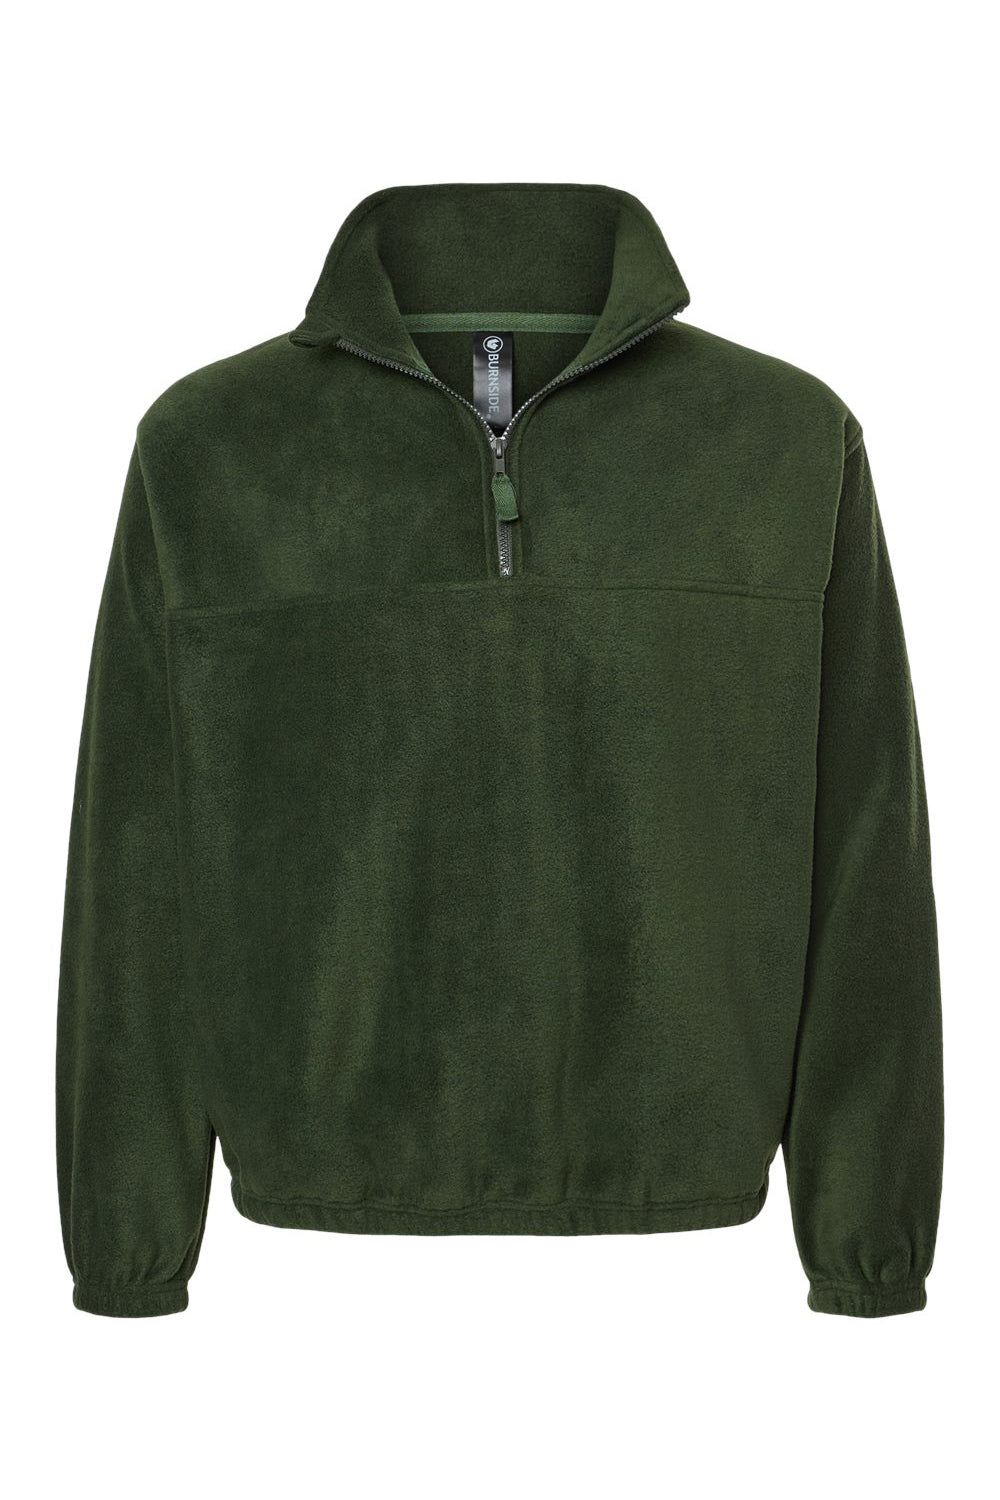 Burnside 3052 Mens Polar Fleece 1/4 Zip Sweatshirt Army Green Flat Front